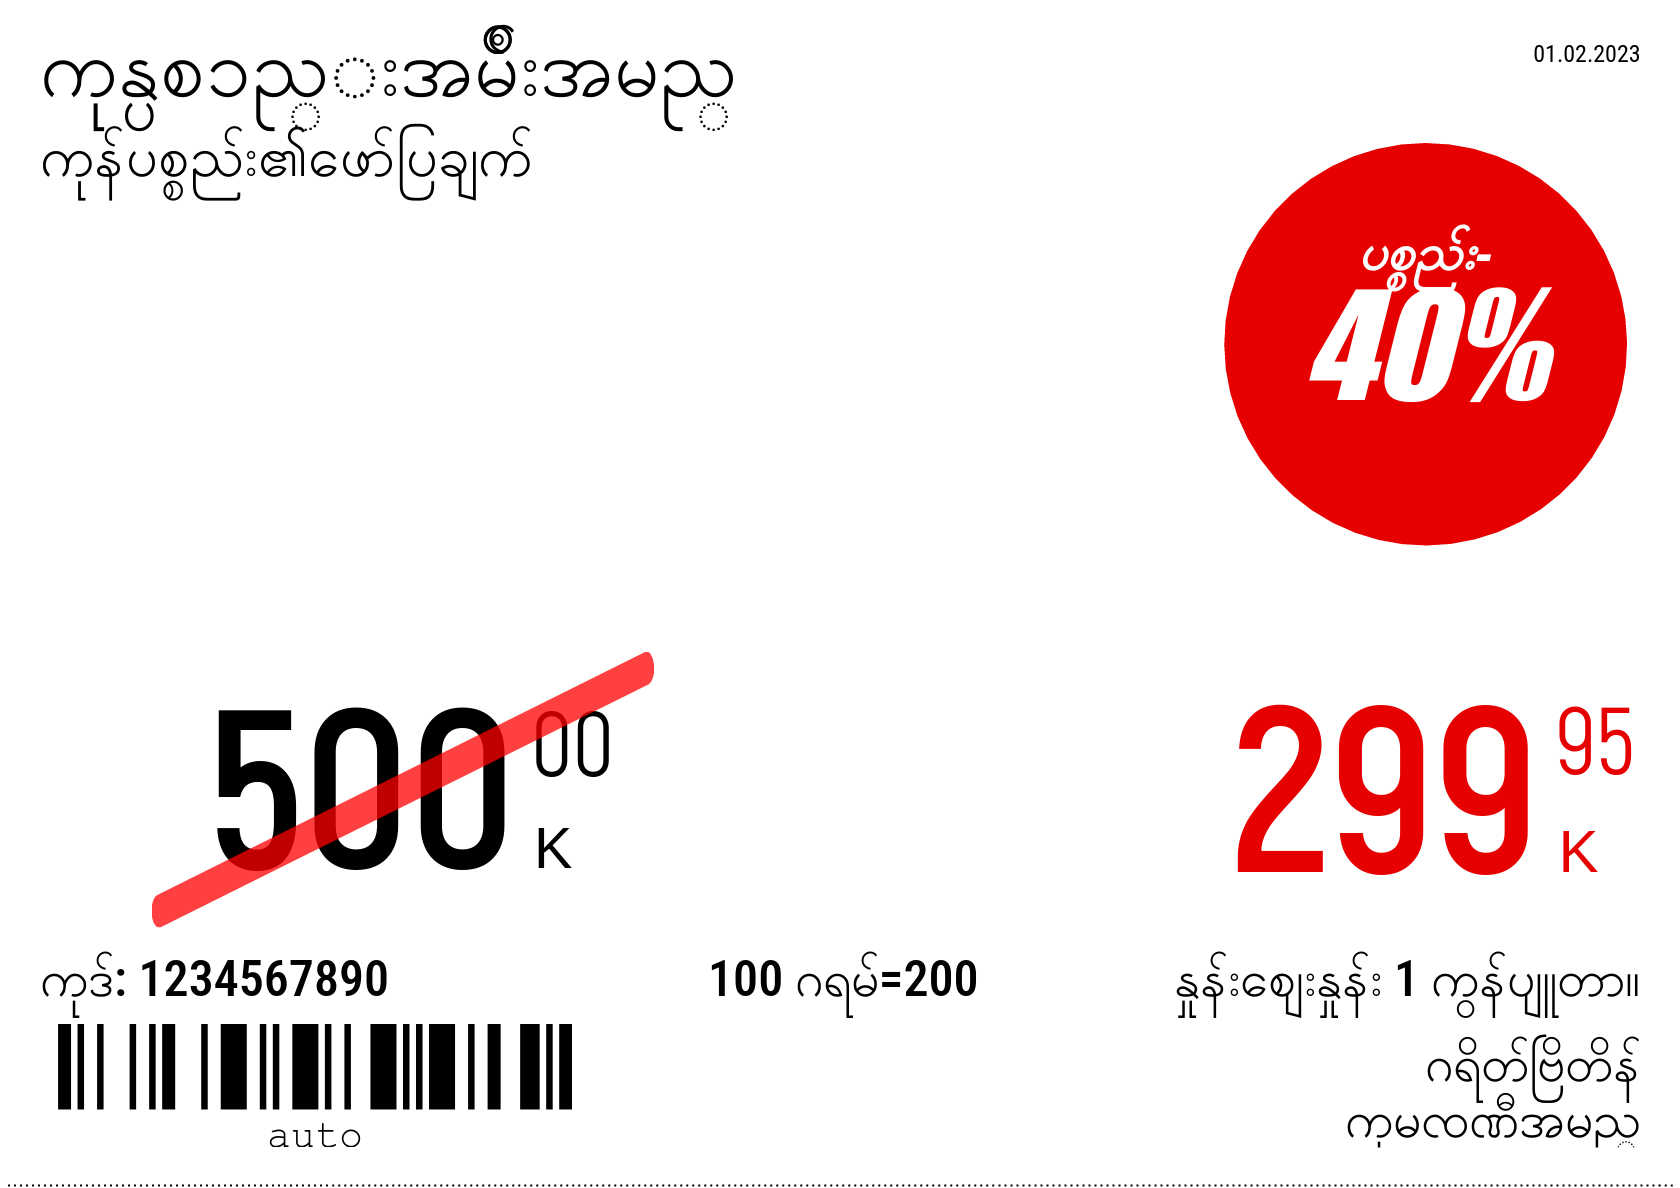 မြန်မာဘာသာ အသစ် / တစ်ဦးက5(တစ်ဝက်4 စာရွက်) / ပရိုမိုးရှင်း 4